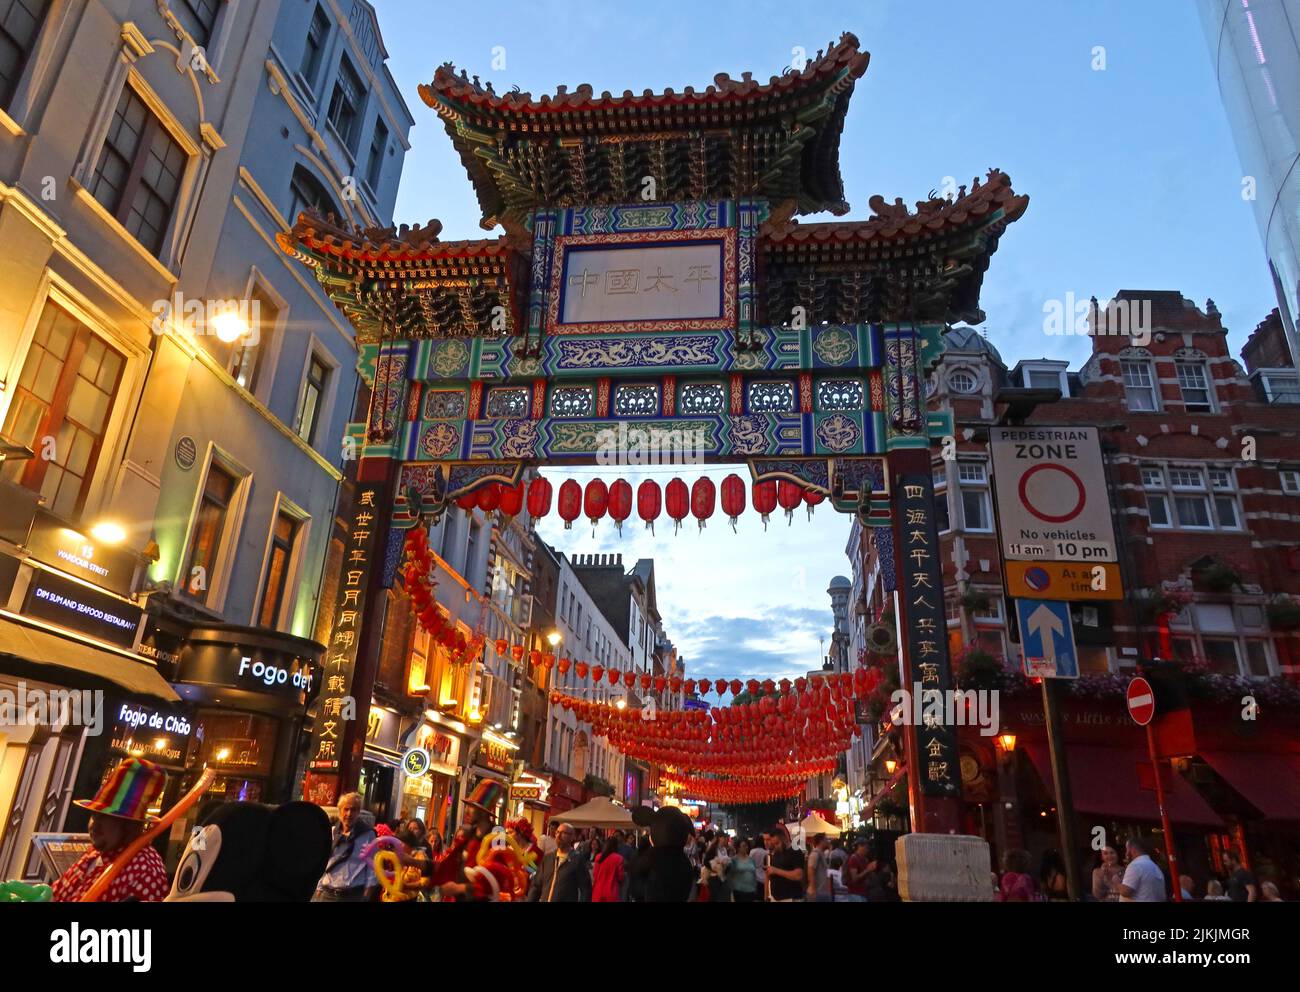 Arc chinois, , Chinatown SOHO Londres au crépuscule, Angleterre, Royaume-Uni Banque D'Images